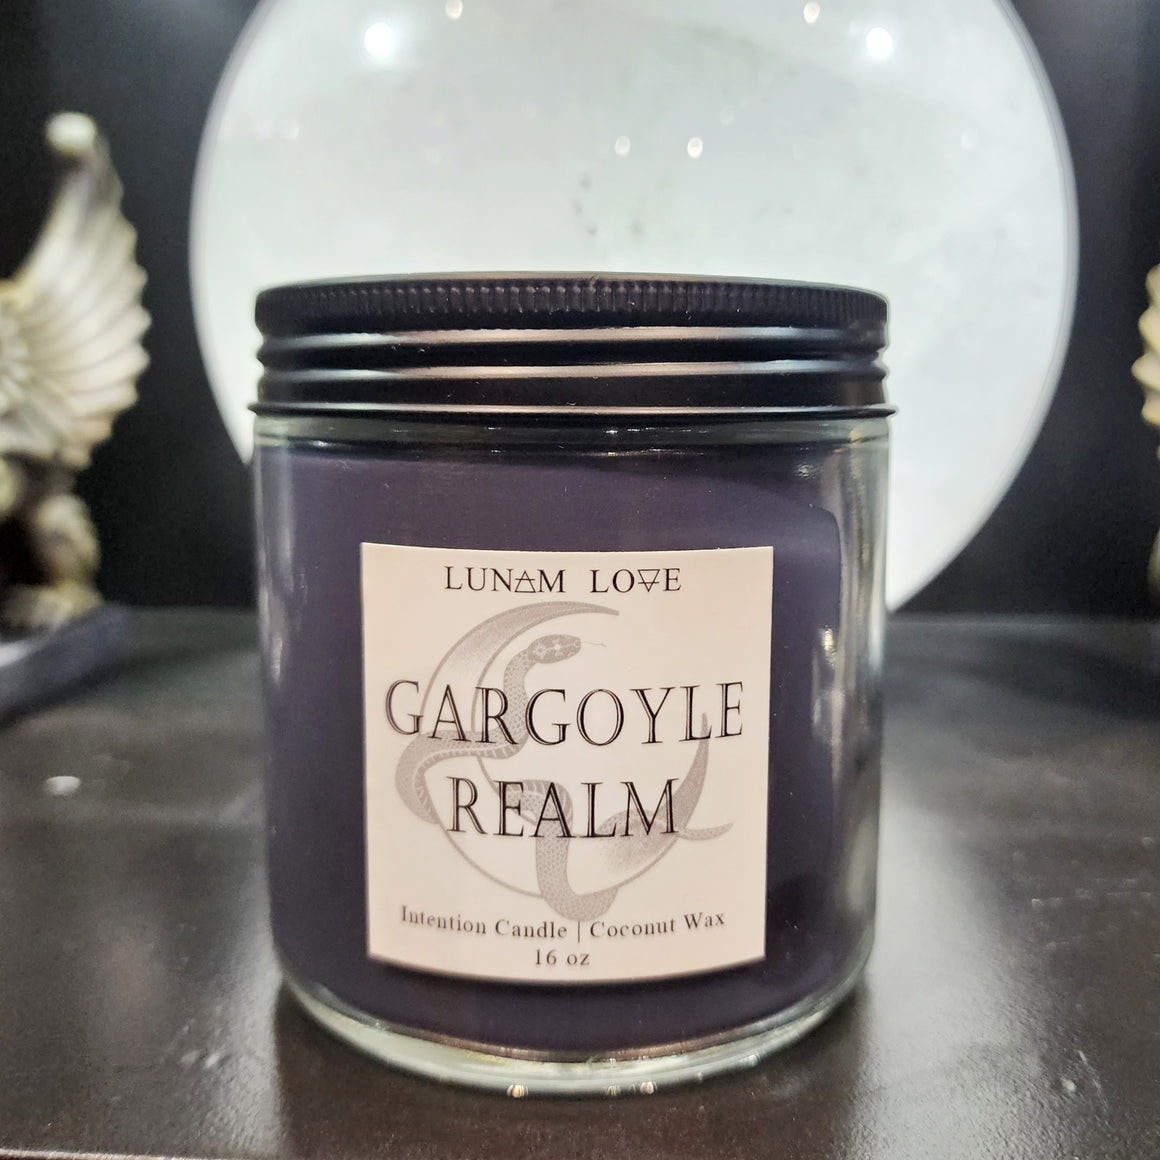 Gargoyle Realm Candle